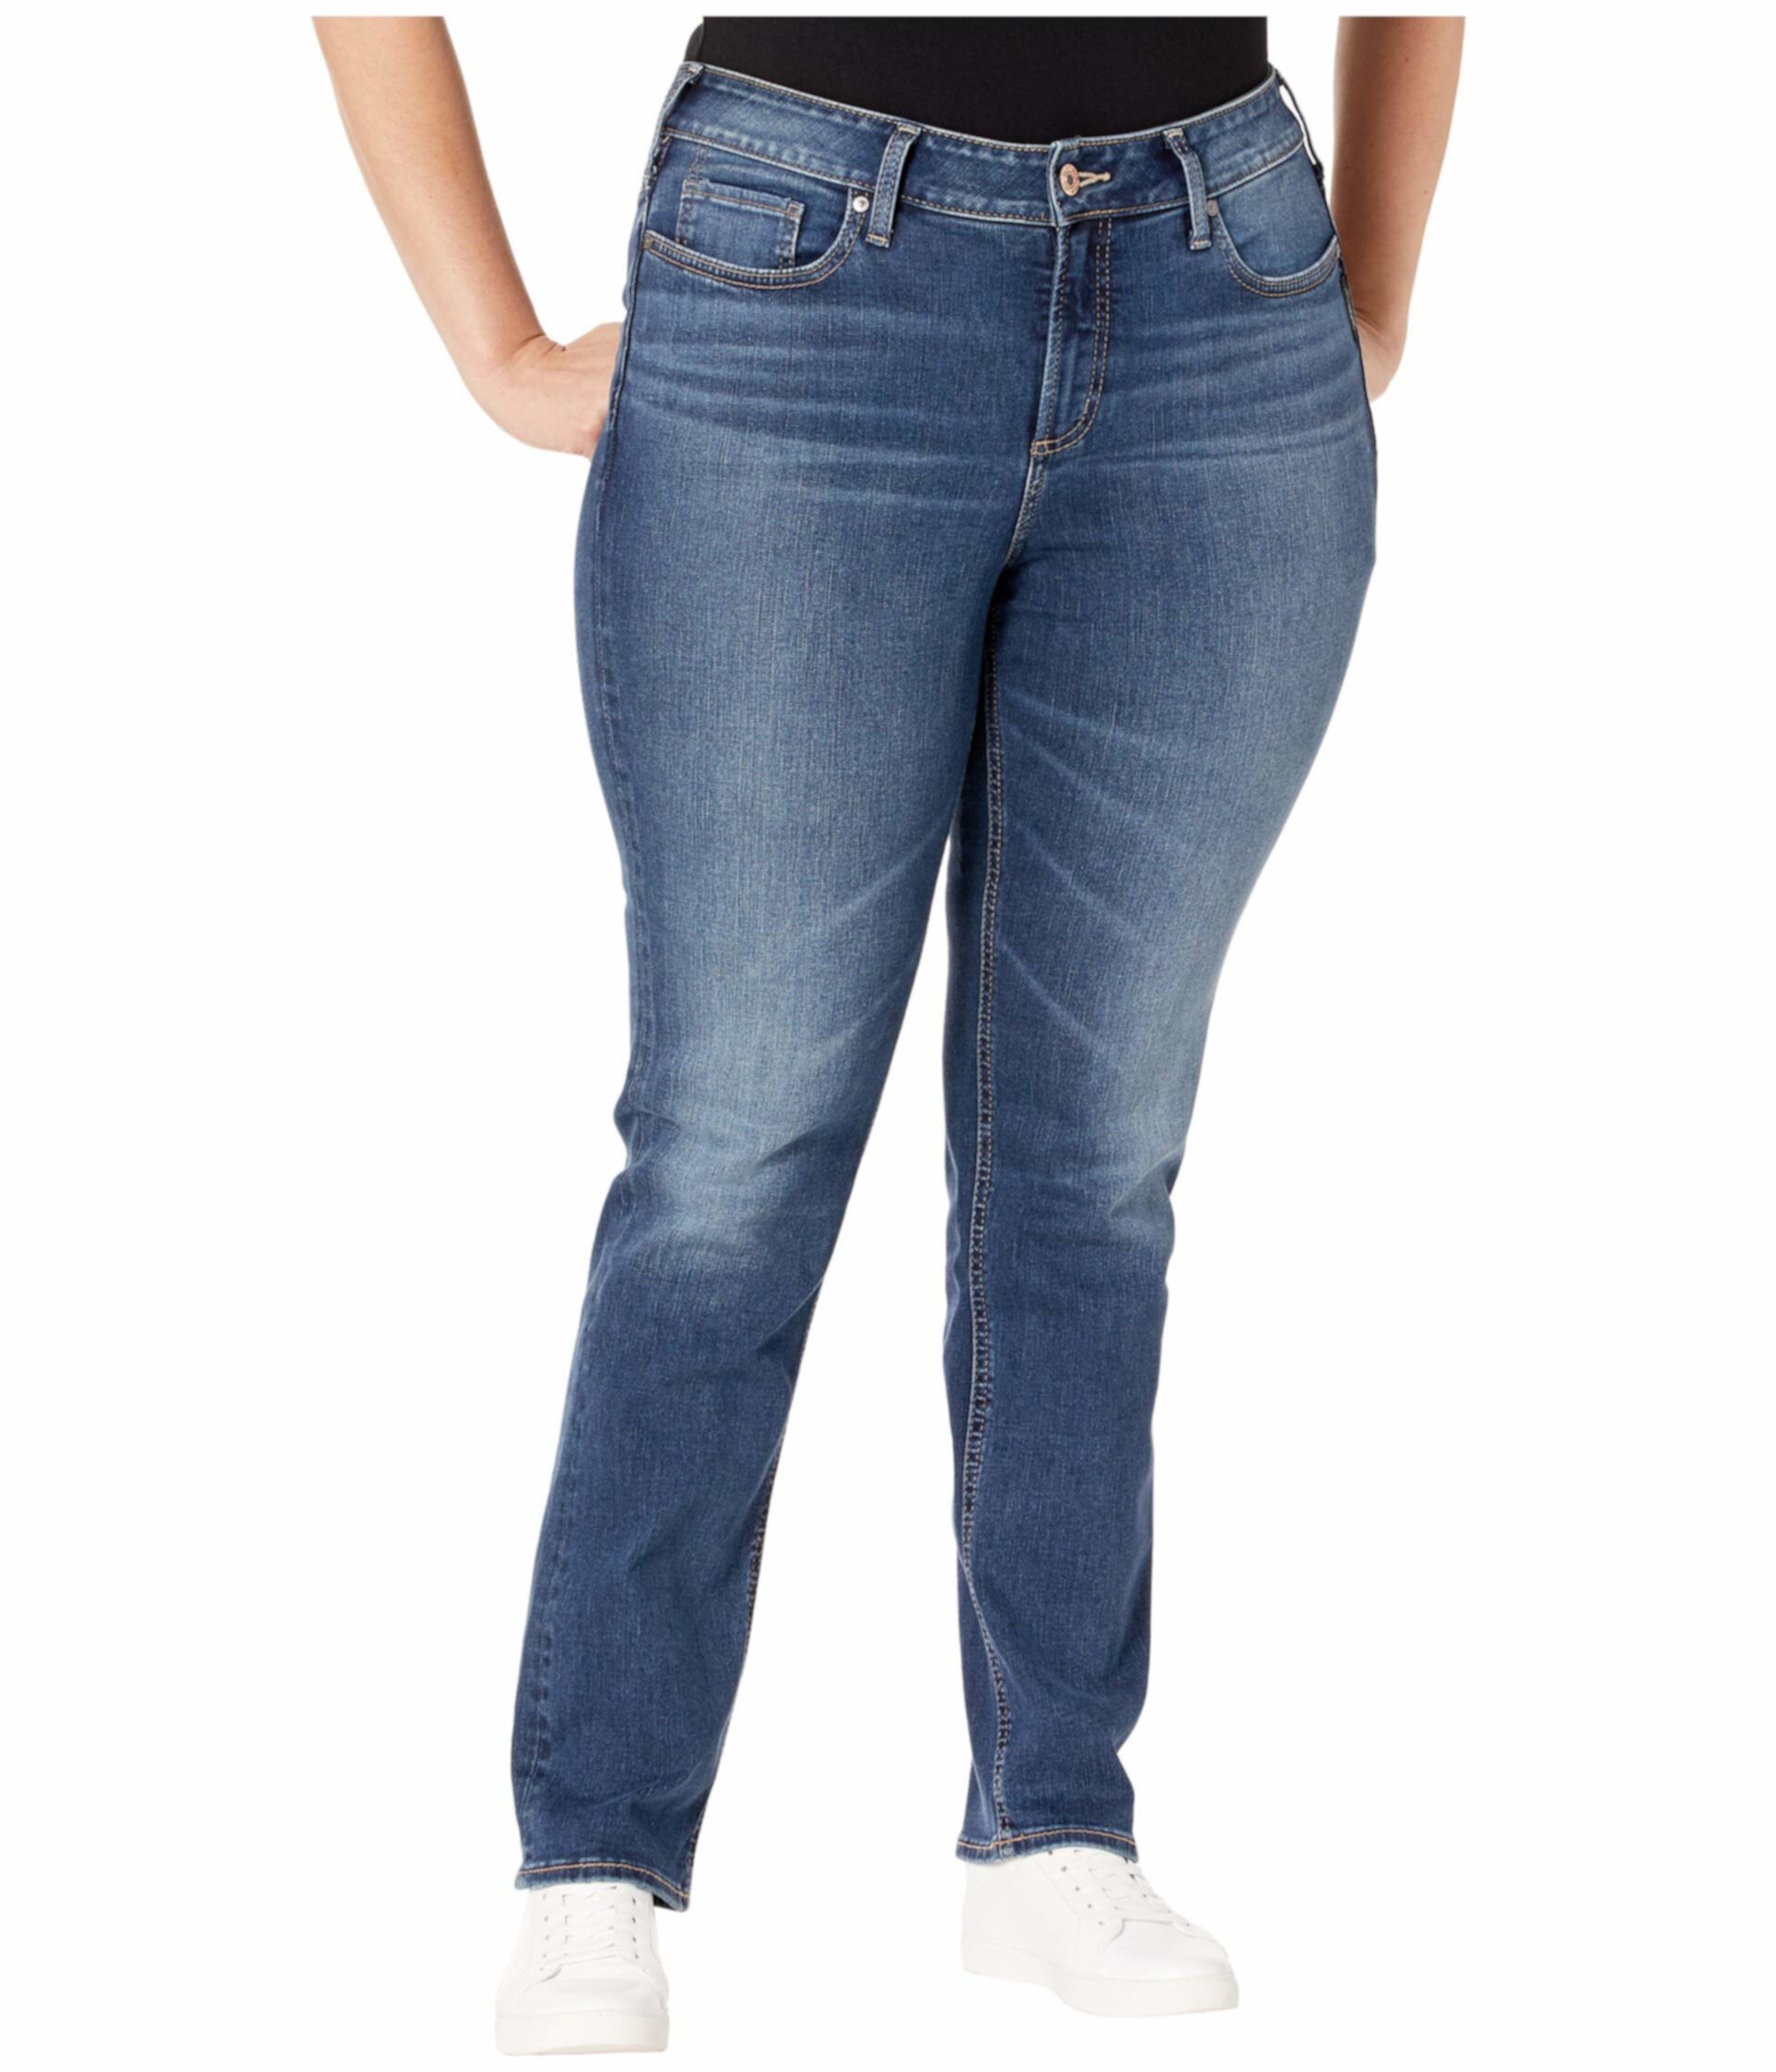 Прямые джинсы Avery с высокой посадкой прямого размера в цвете Индиго W94443SDG313 Silver Jeans Co.